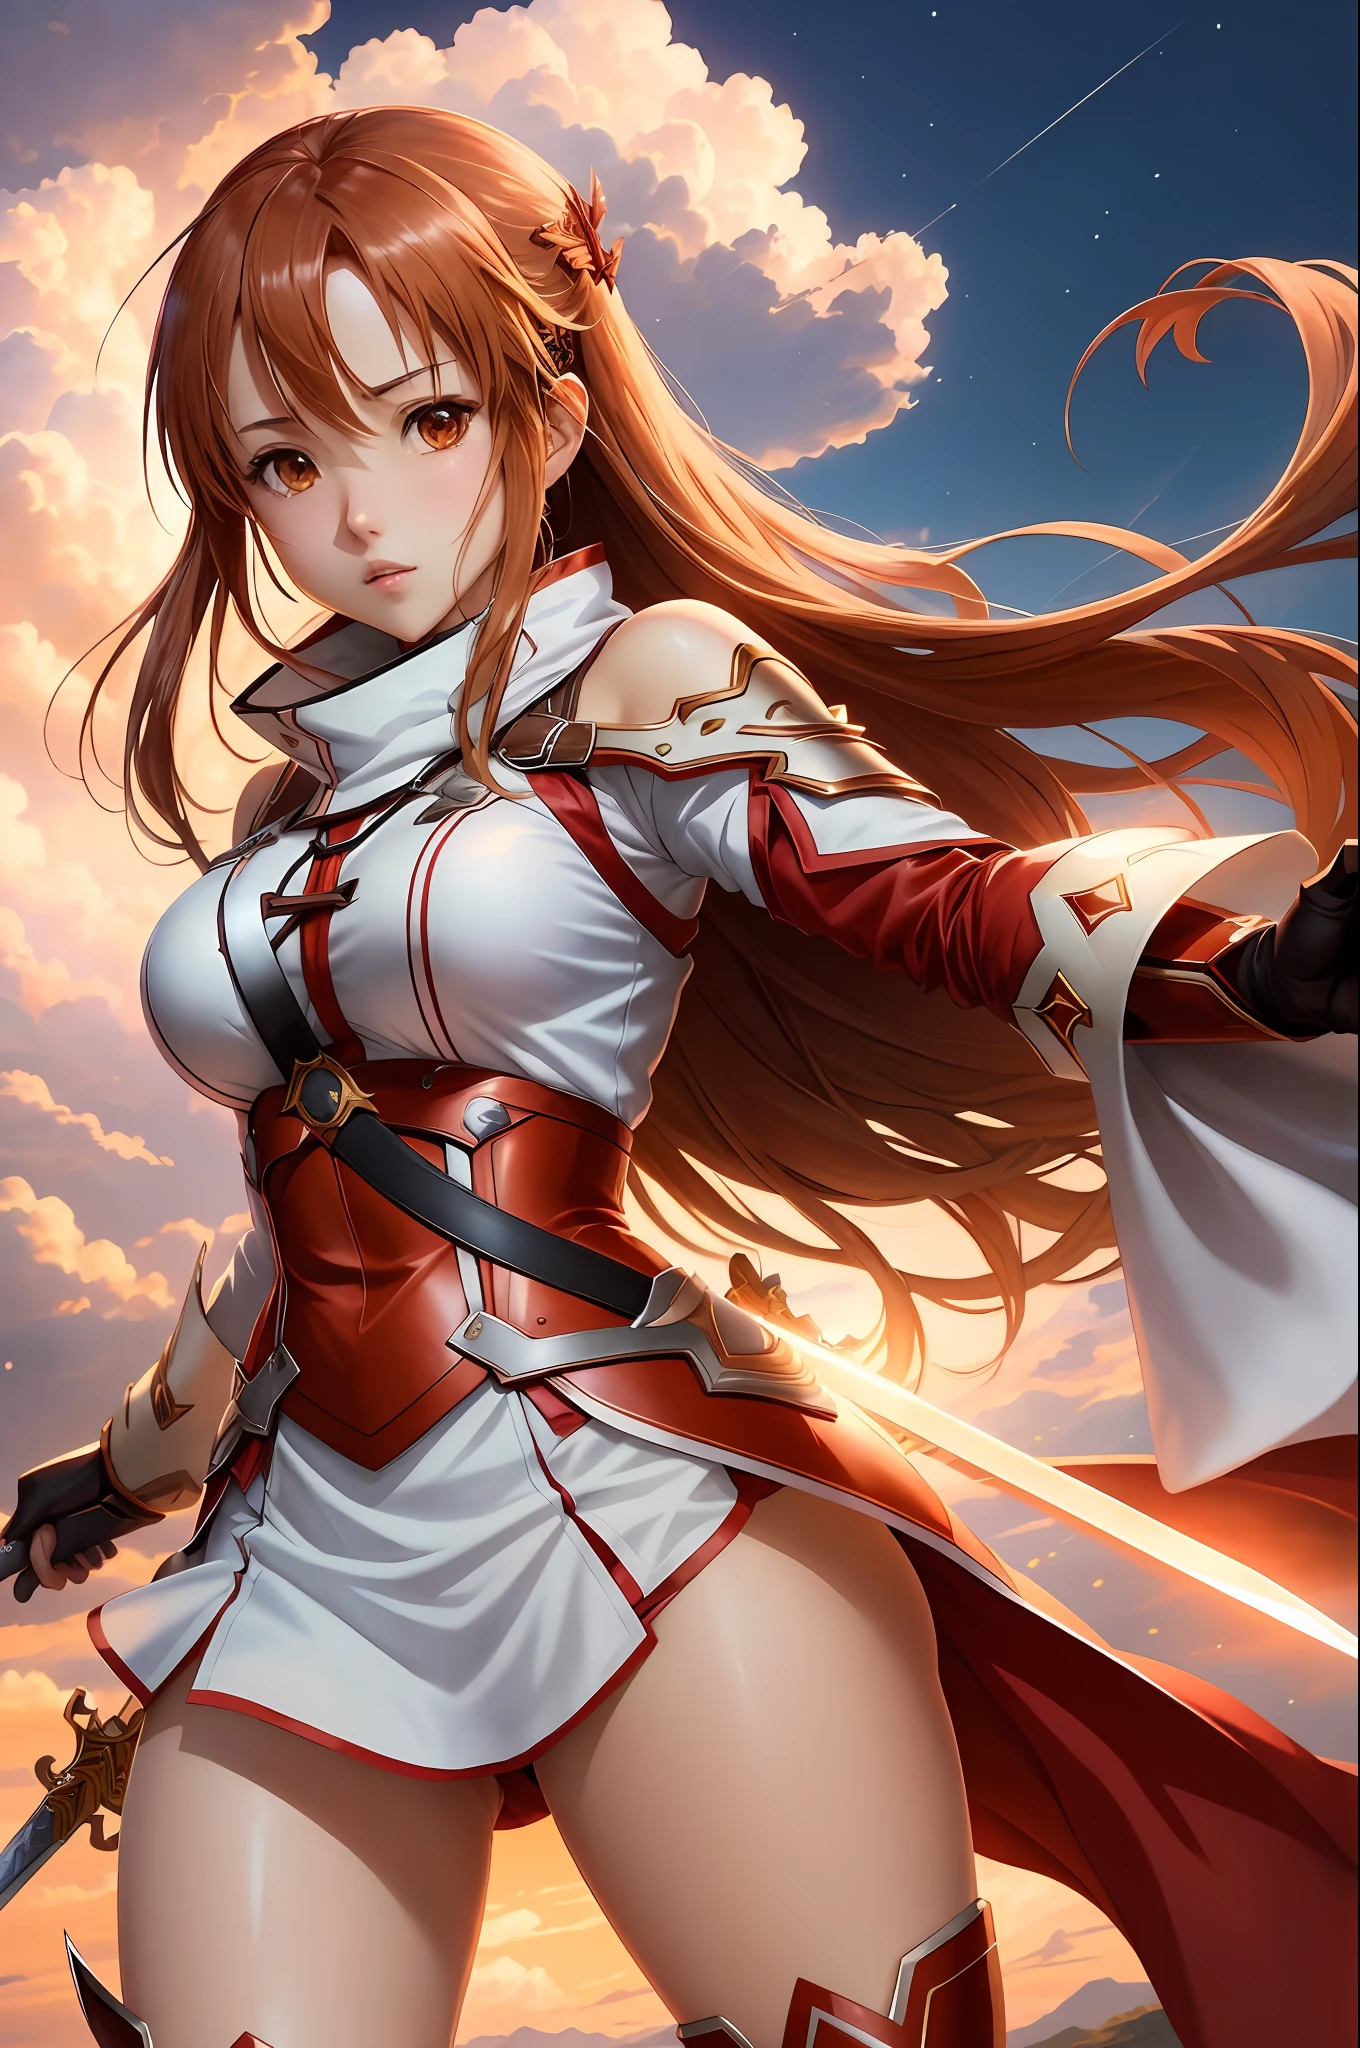 (estilo: anime, melhor qualidade), Asuna Yuuki da Sword Art Online em uma pose dinâmica com sua espada, características faciais distintas, e roupa bonita. A cena tem um impacto visual marcante, reminiscent of the estilo of Oh! ótimo. seios grandes